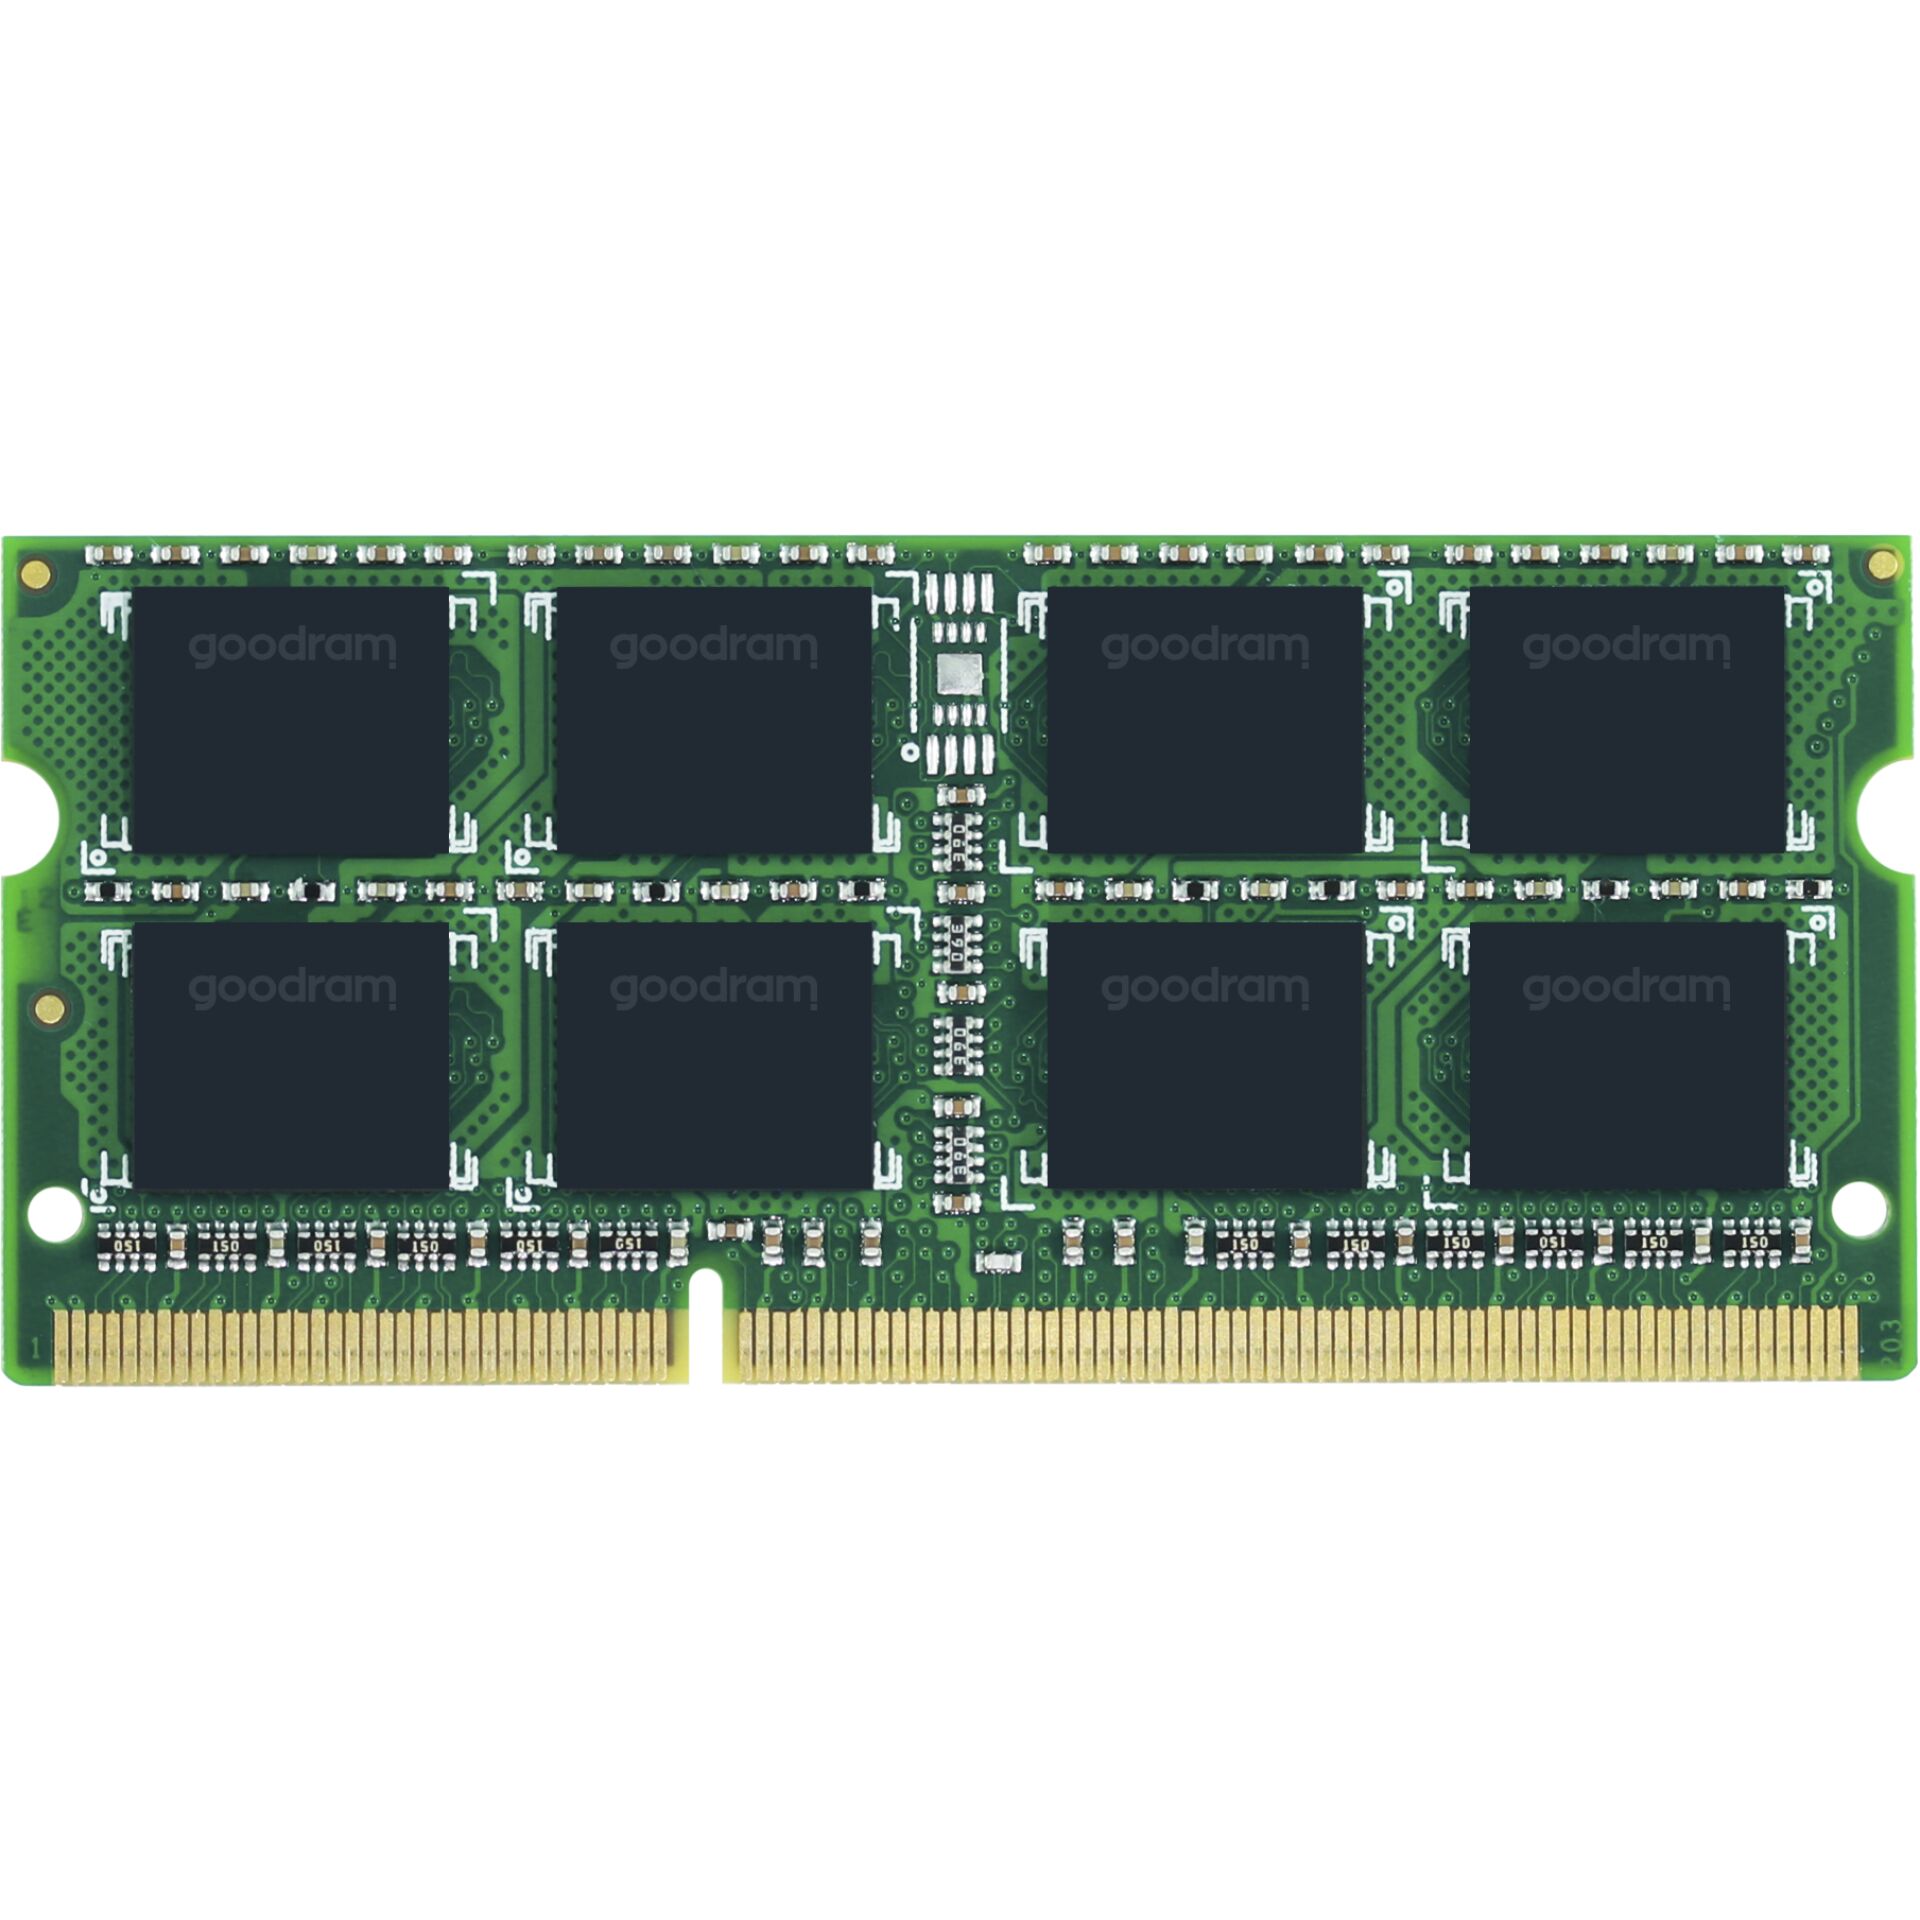 DDR3RAM 8GB DDR3-1600 Goodram Play SO-DIMM, CL11 